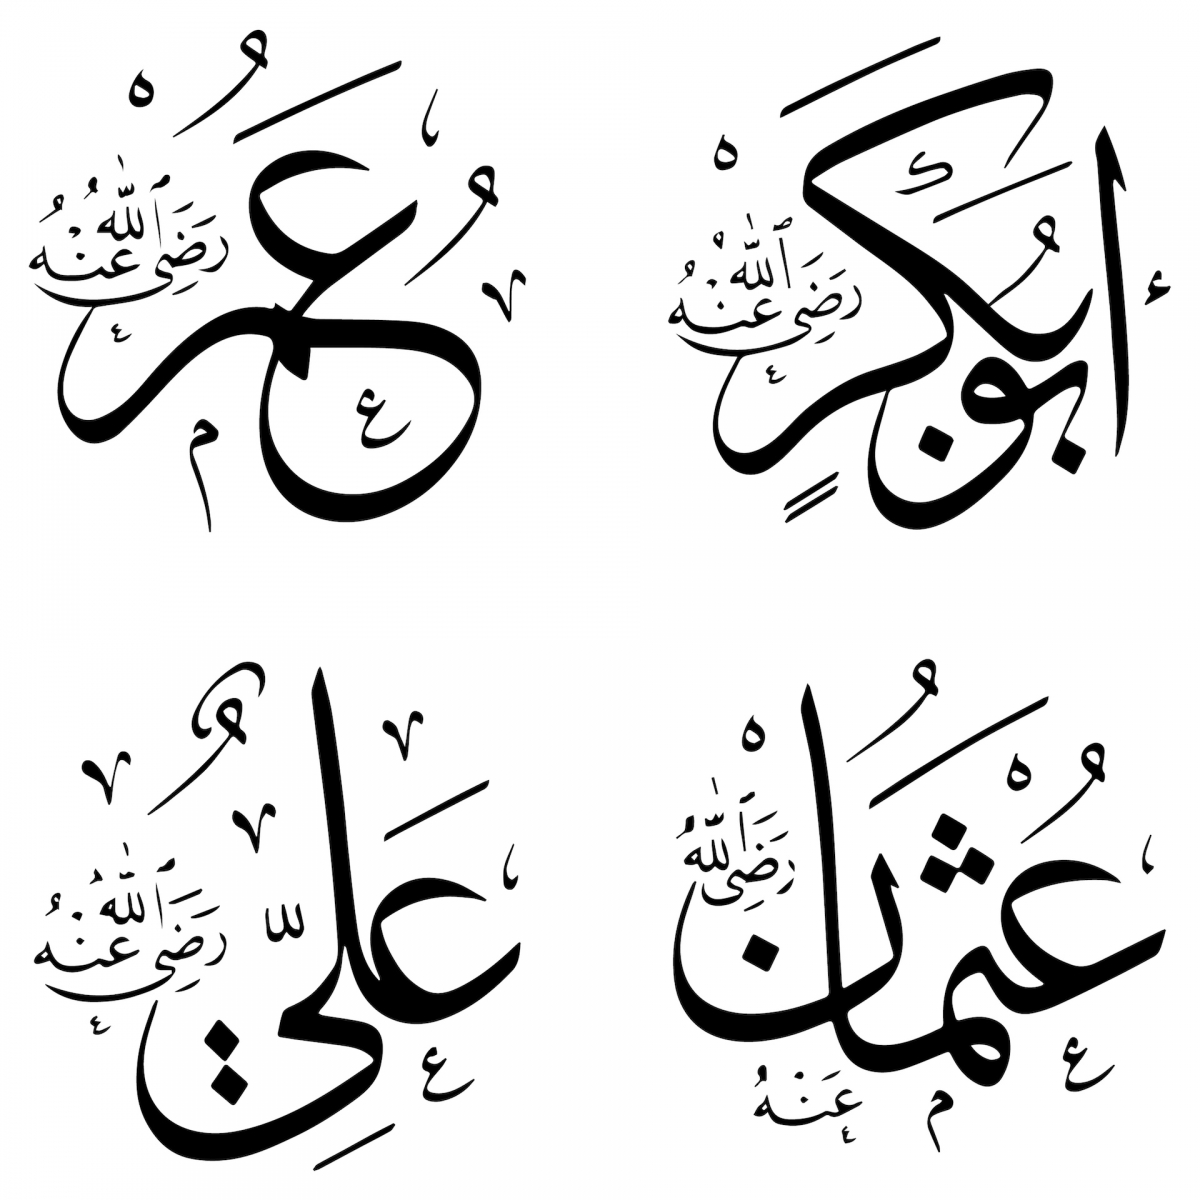 Имена халифов Рашидун в исламской надписи.  Эбу Бекир, Омер, Осман и Али.  Таблички с именами 4 рашидунских халифов украшают любые религиозные здания в исламском мире.